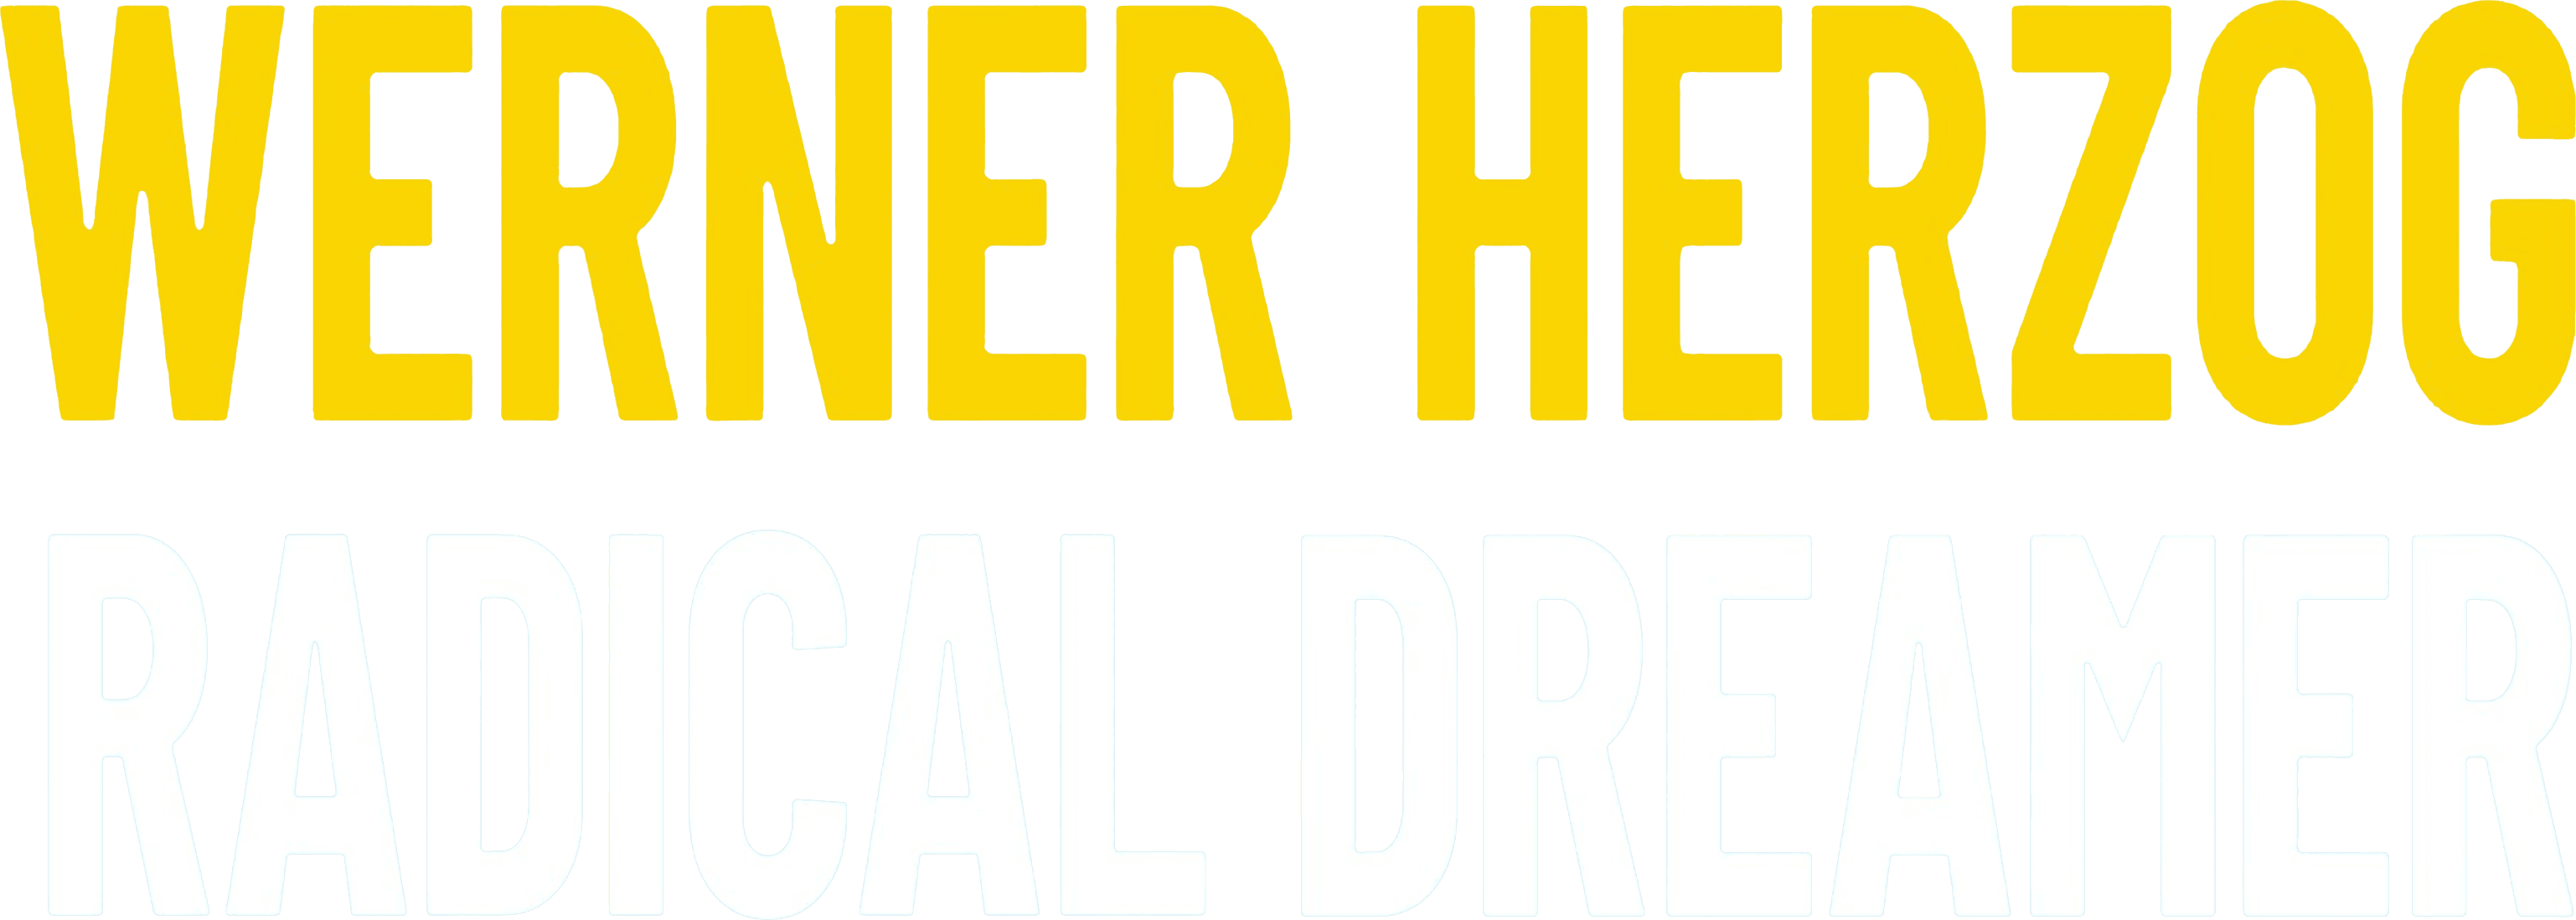 Werner Herzog: Radical Dreamer logo